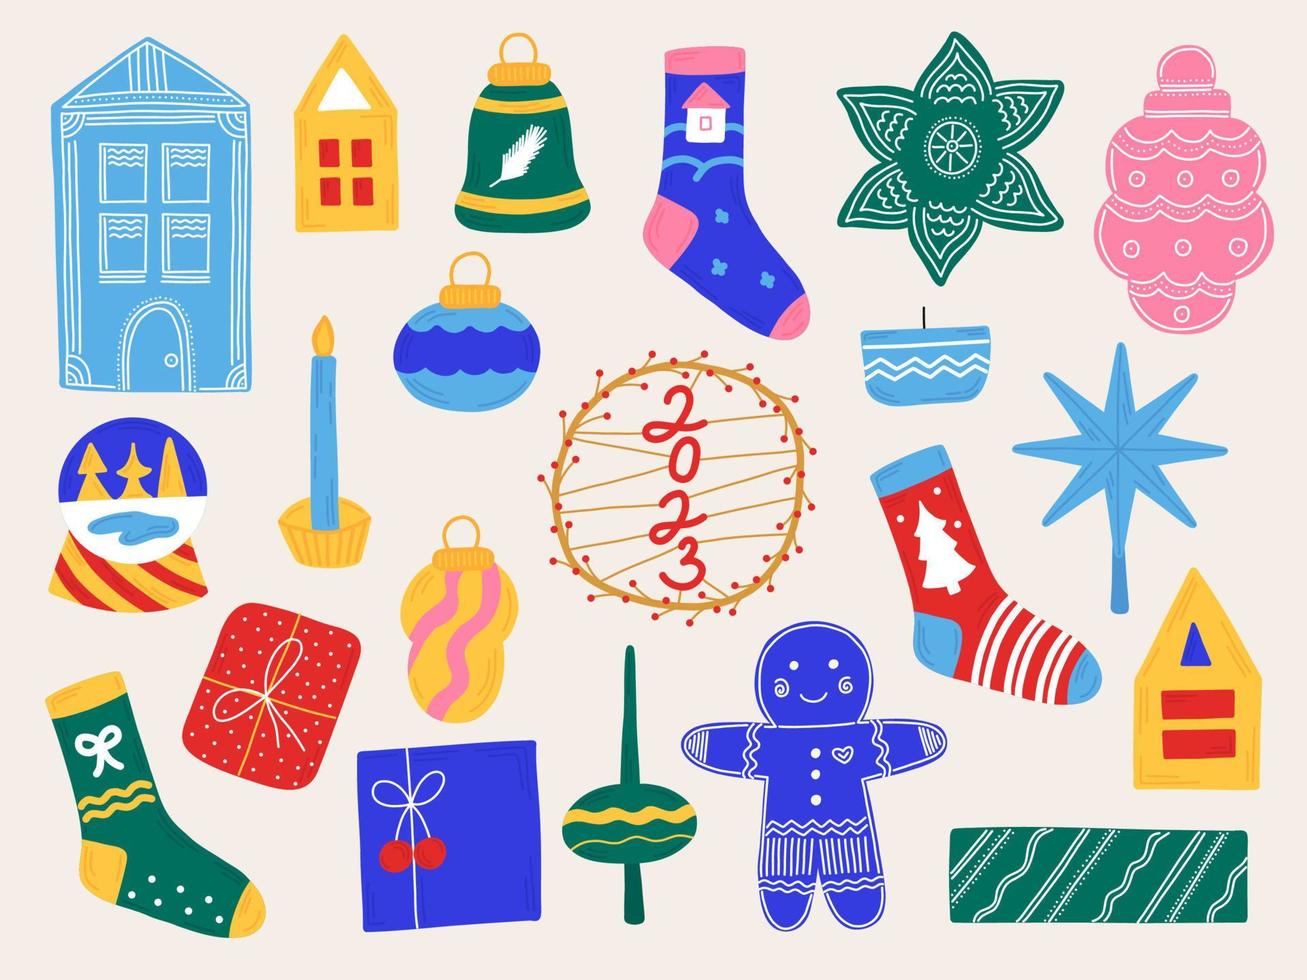 ano novo definir elementos de natal em estilo desenhado à mão. ícones isolados, adesivos para o design de folhetos, convites. vetor